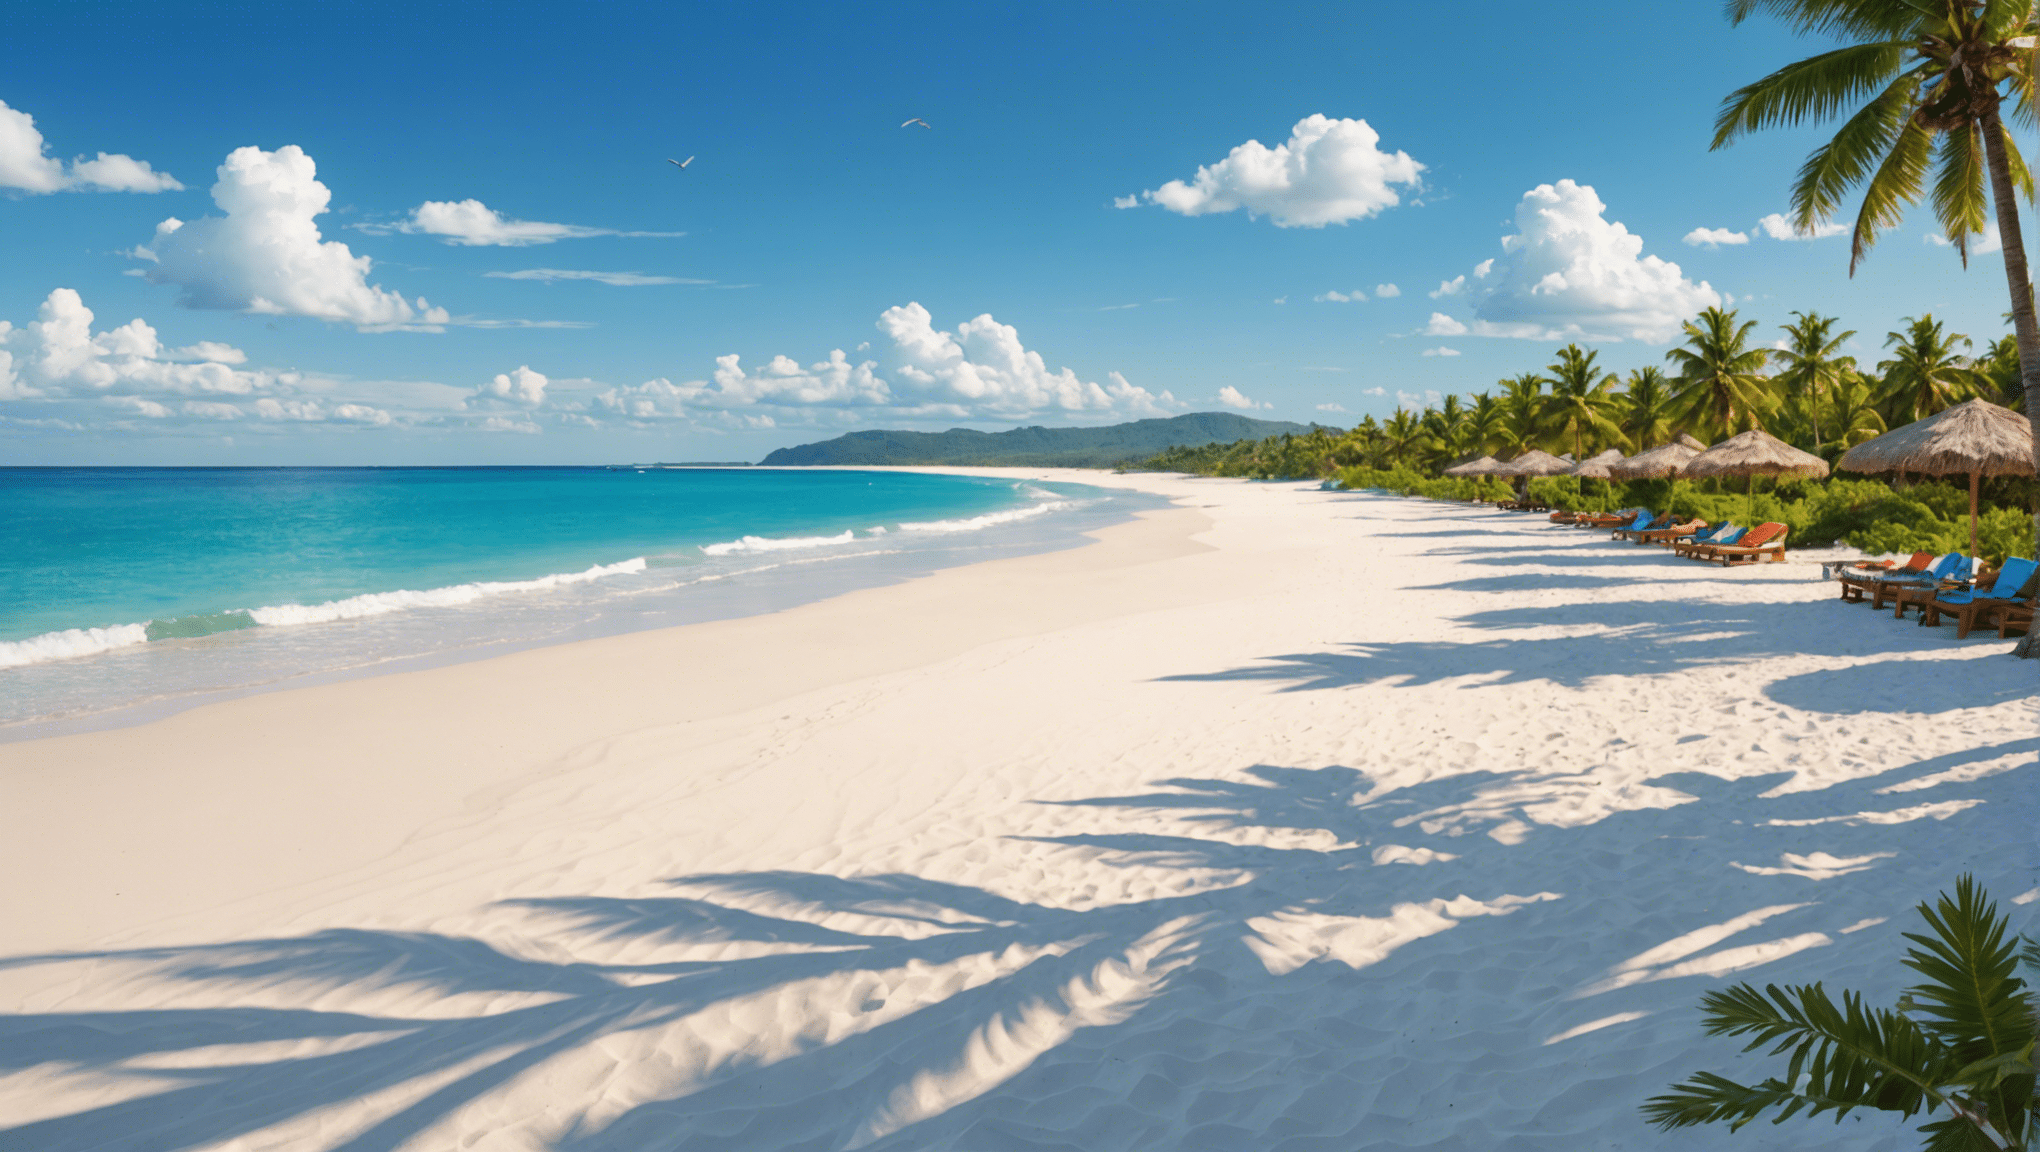 Descubre las playas de arena blanca más hermosas del mundo y déjate encantar por su belleza y serenidad.